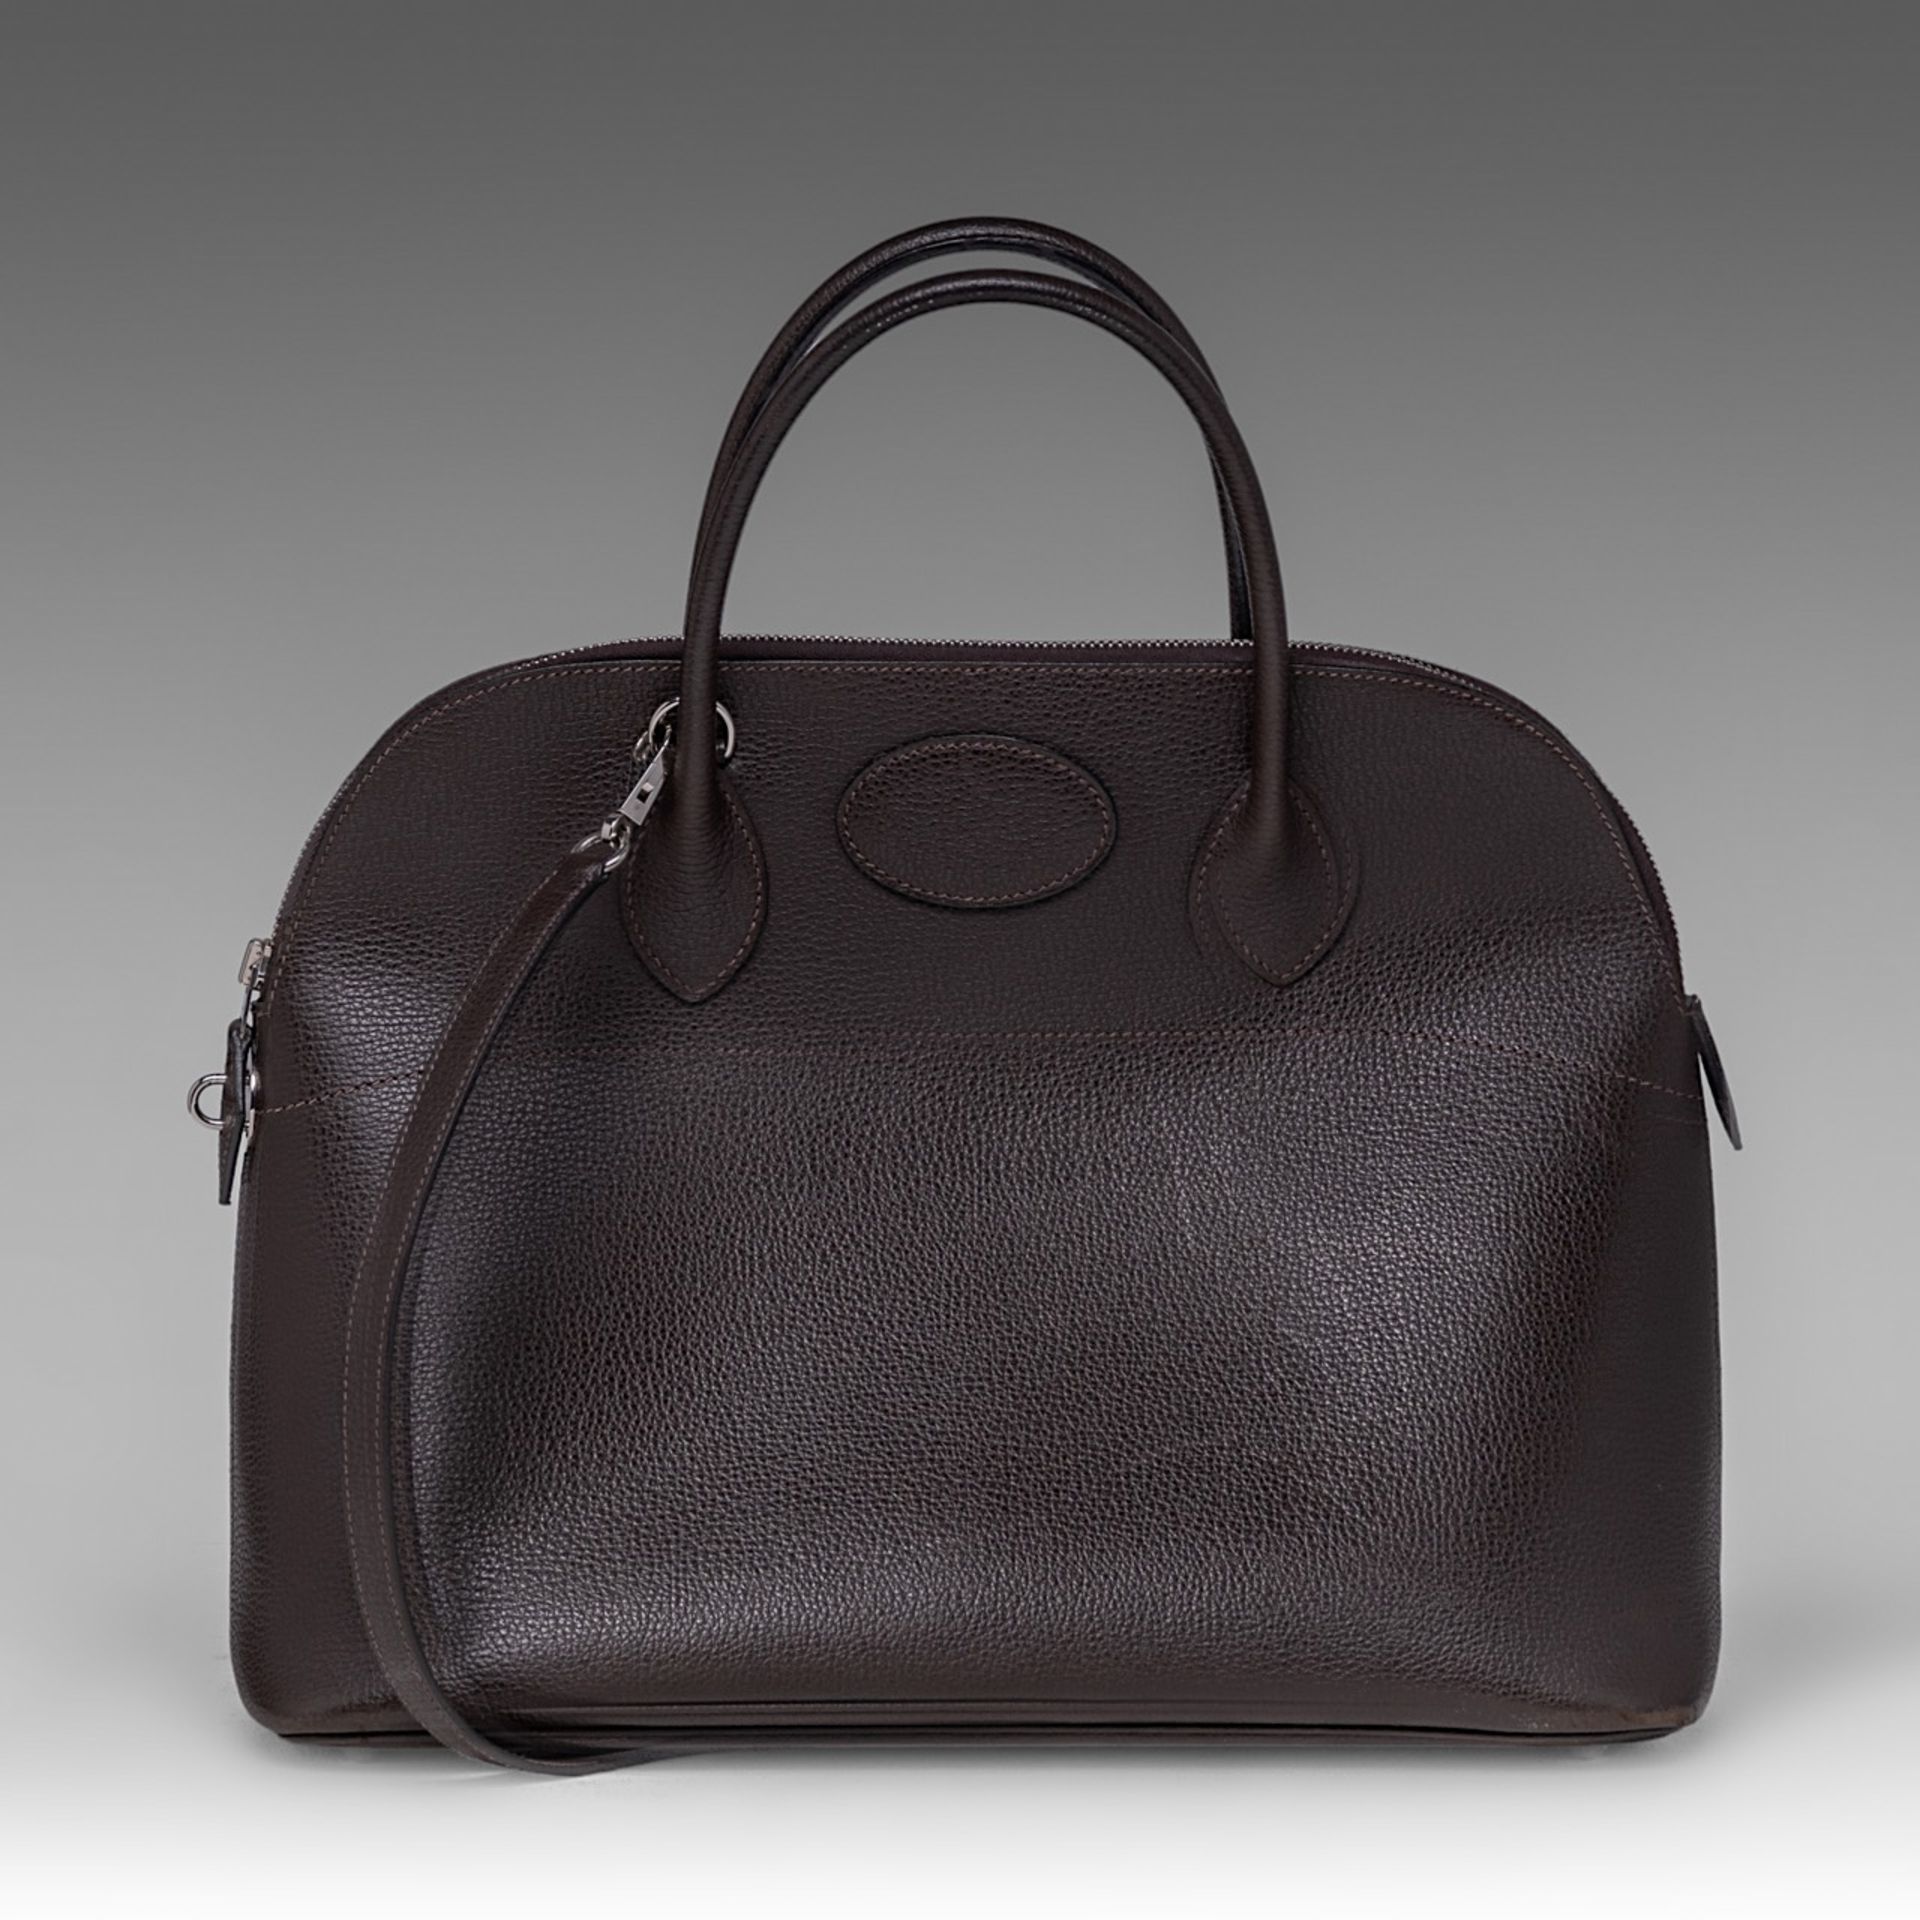 A Hermes bolide 34 CK brown veau epsom handbag, H 28 - W 37 - D 14 cm - Image 5 of 15